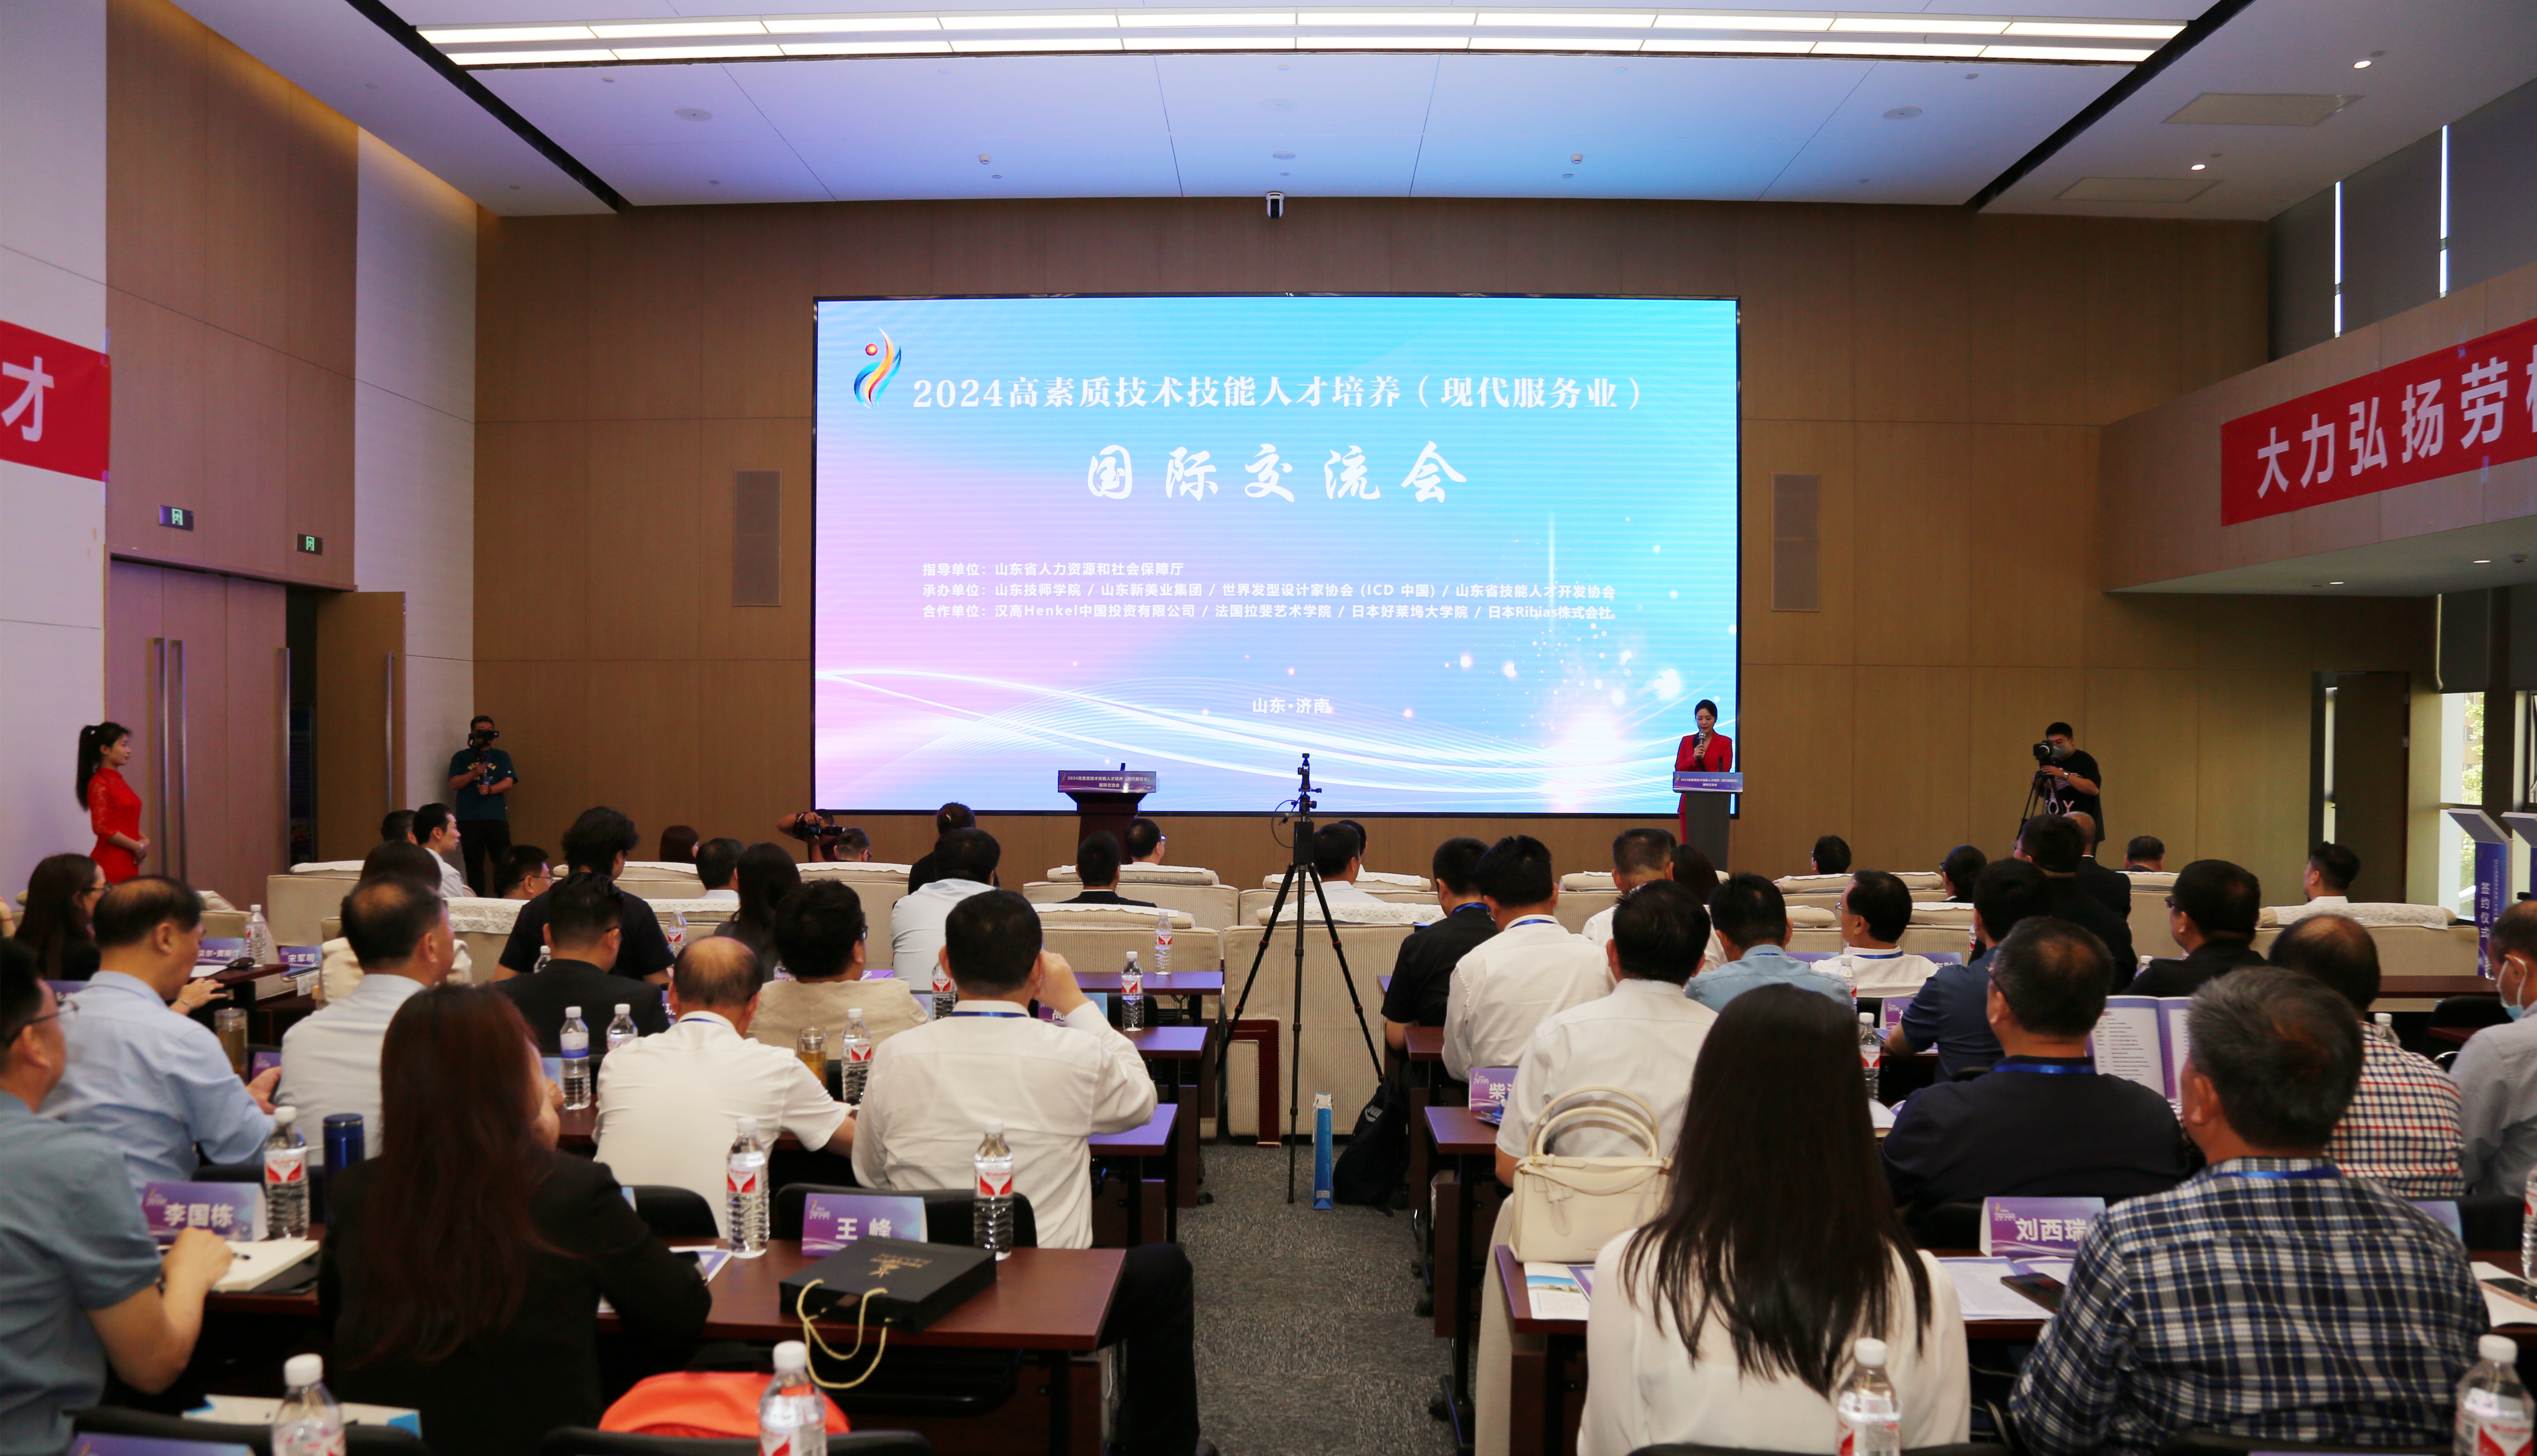 2024高素质技术技能人才培养（现代服务业）国际交流会在济南举行